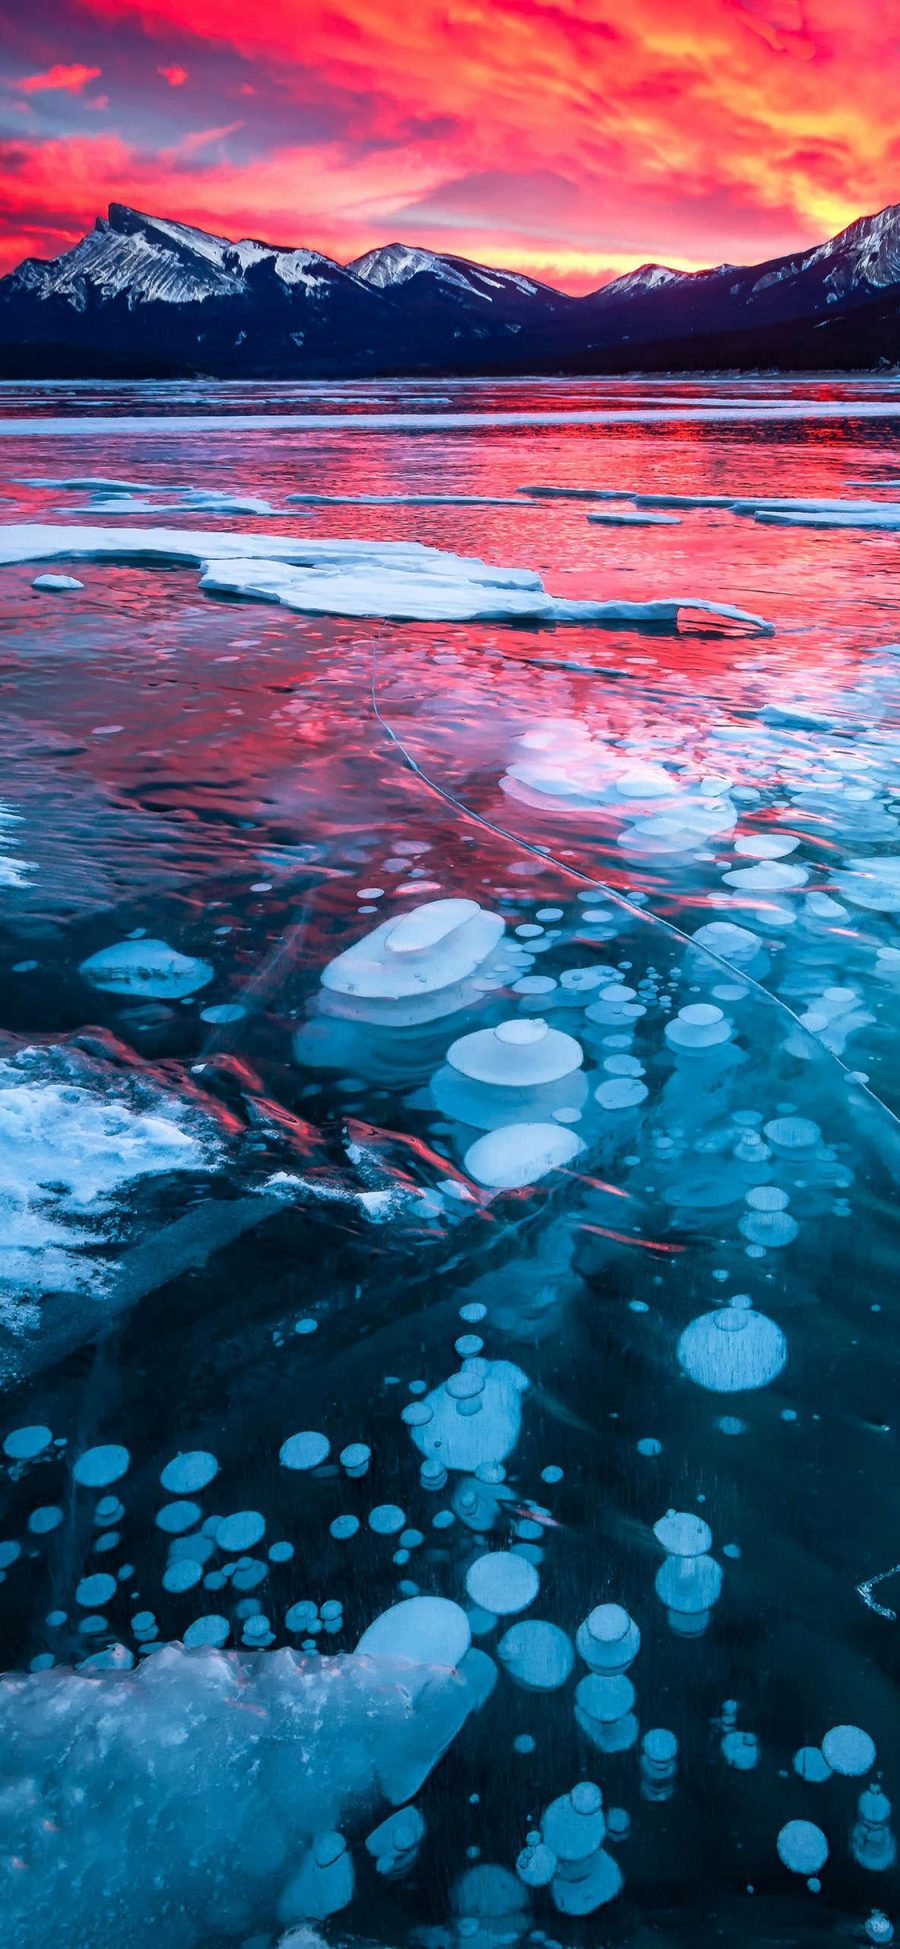 [2436×1125]亚伯拉罕湖 加拿大 大自然 冰块 苹果手机壁纸图片